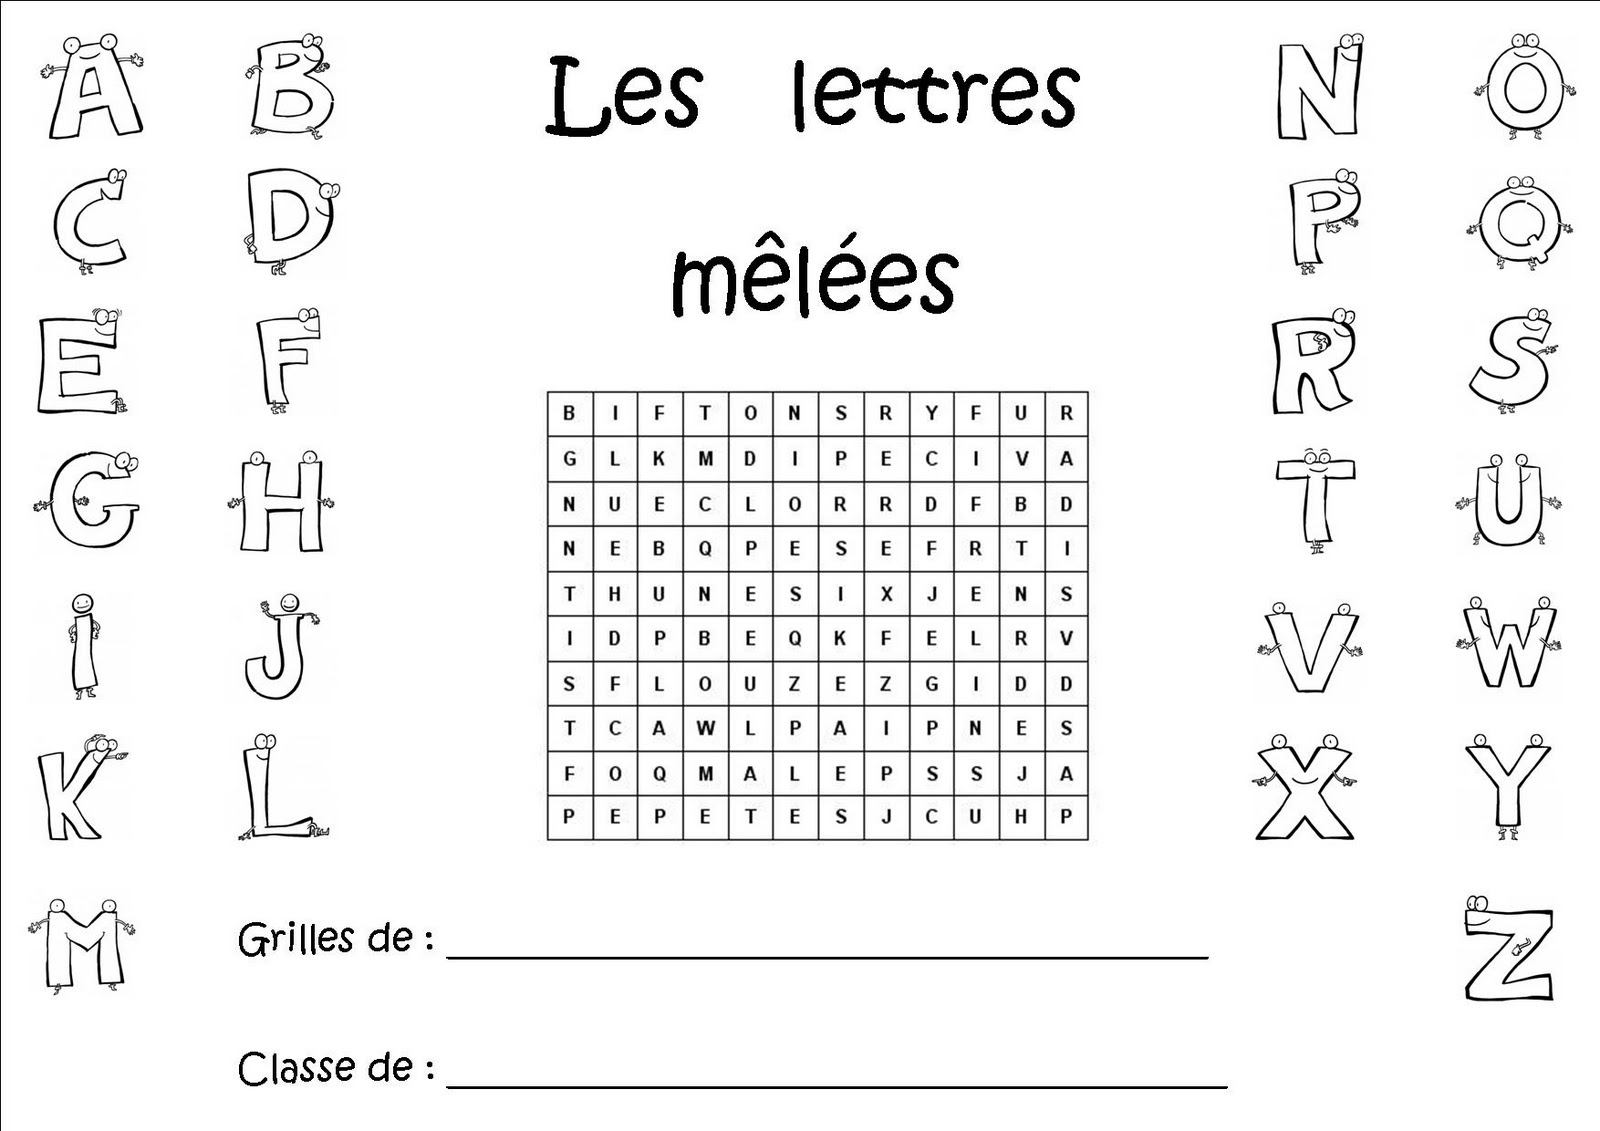 La Maternelle De Laurène: Les Lettres Mêlées dedans Mots Coupés À Imprimer 